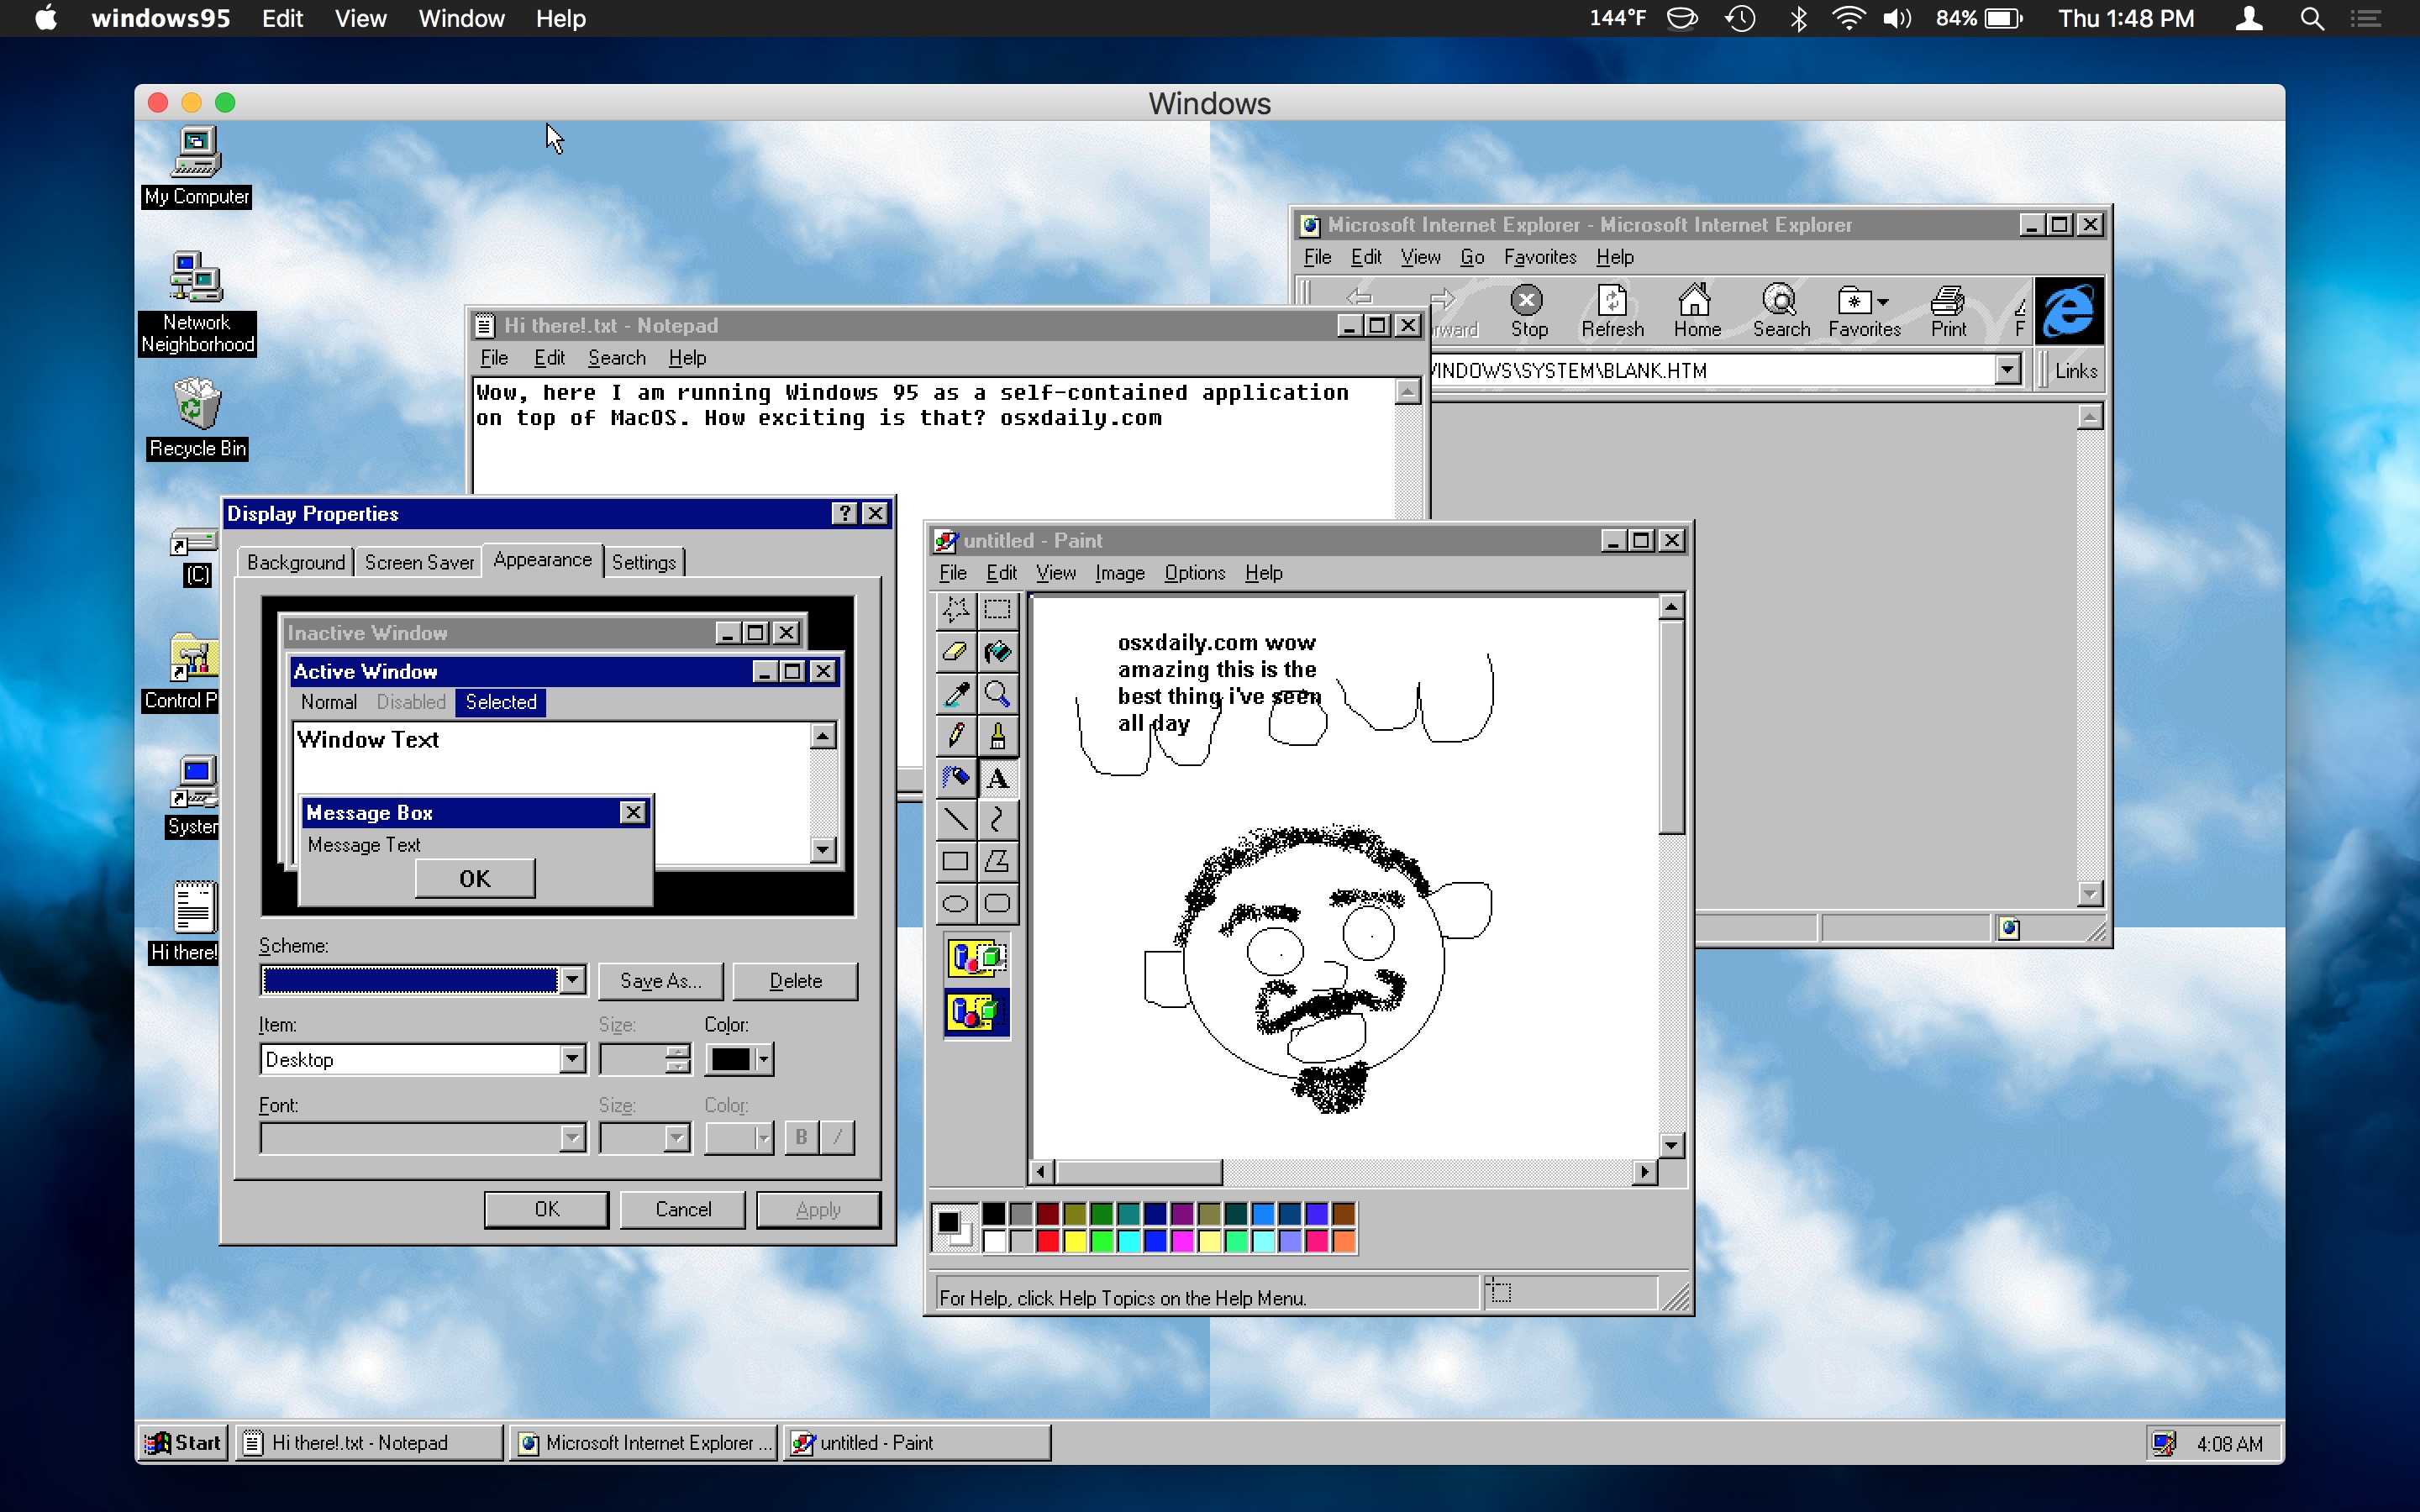 Windows 95 virtualbox image backup download